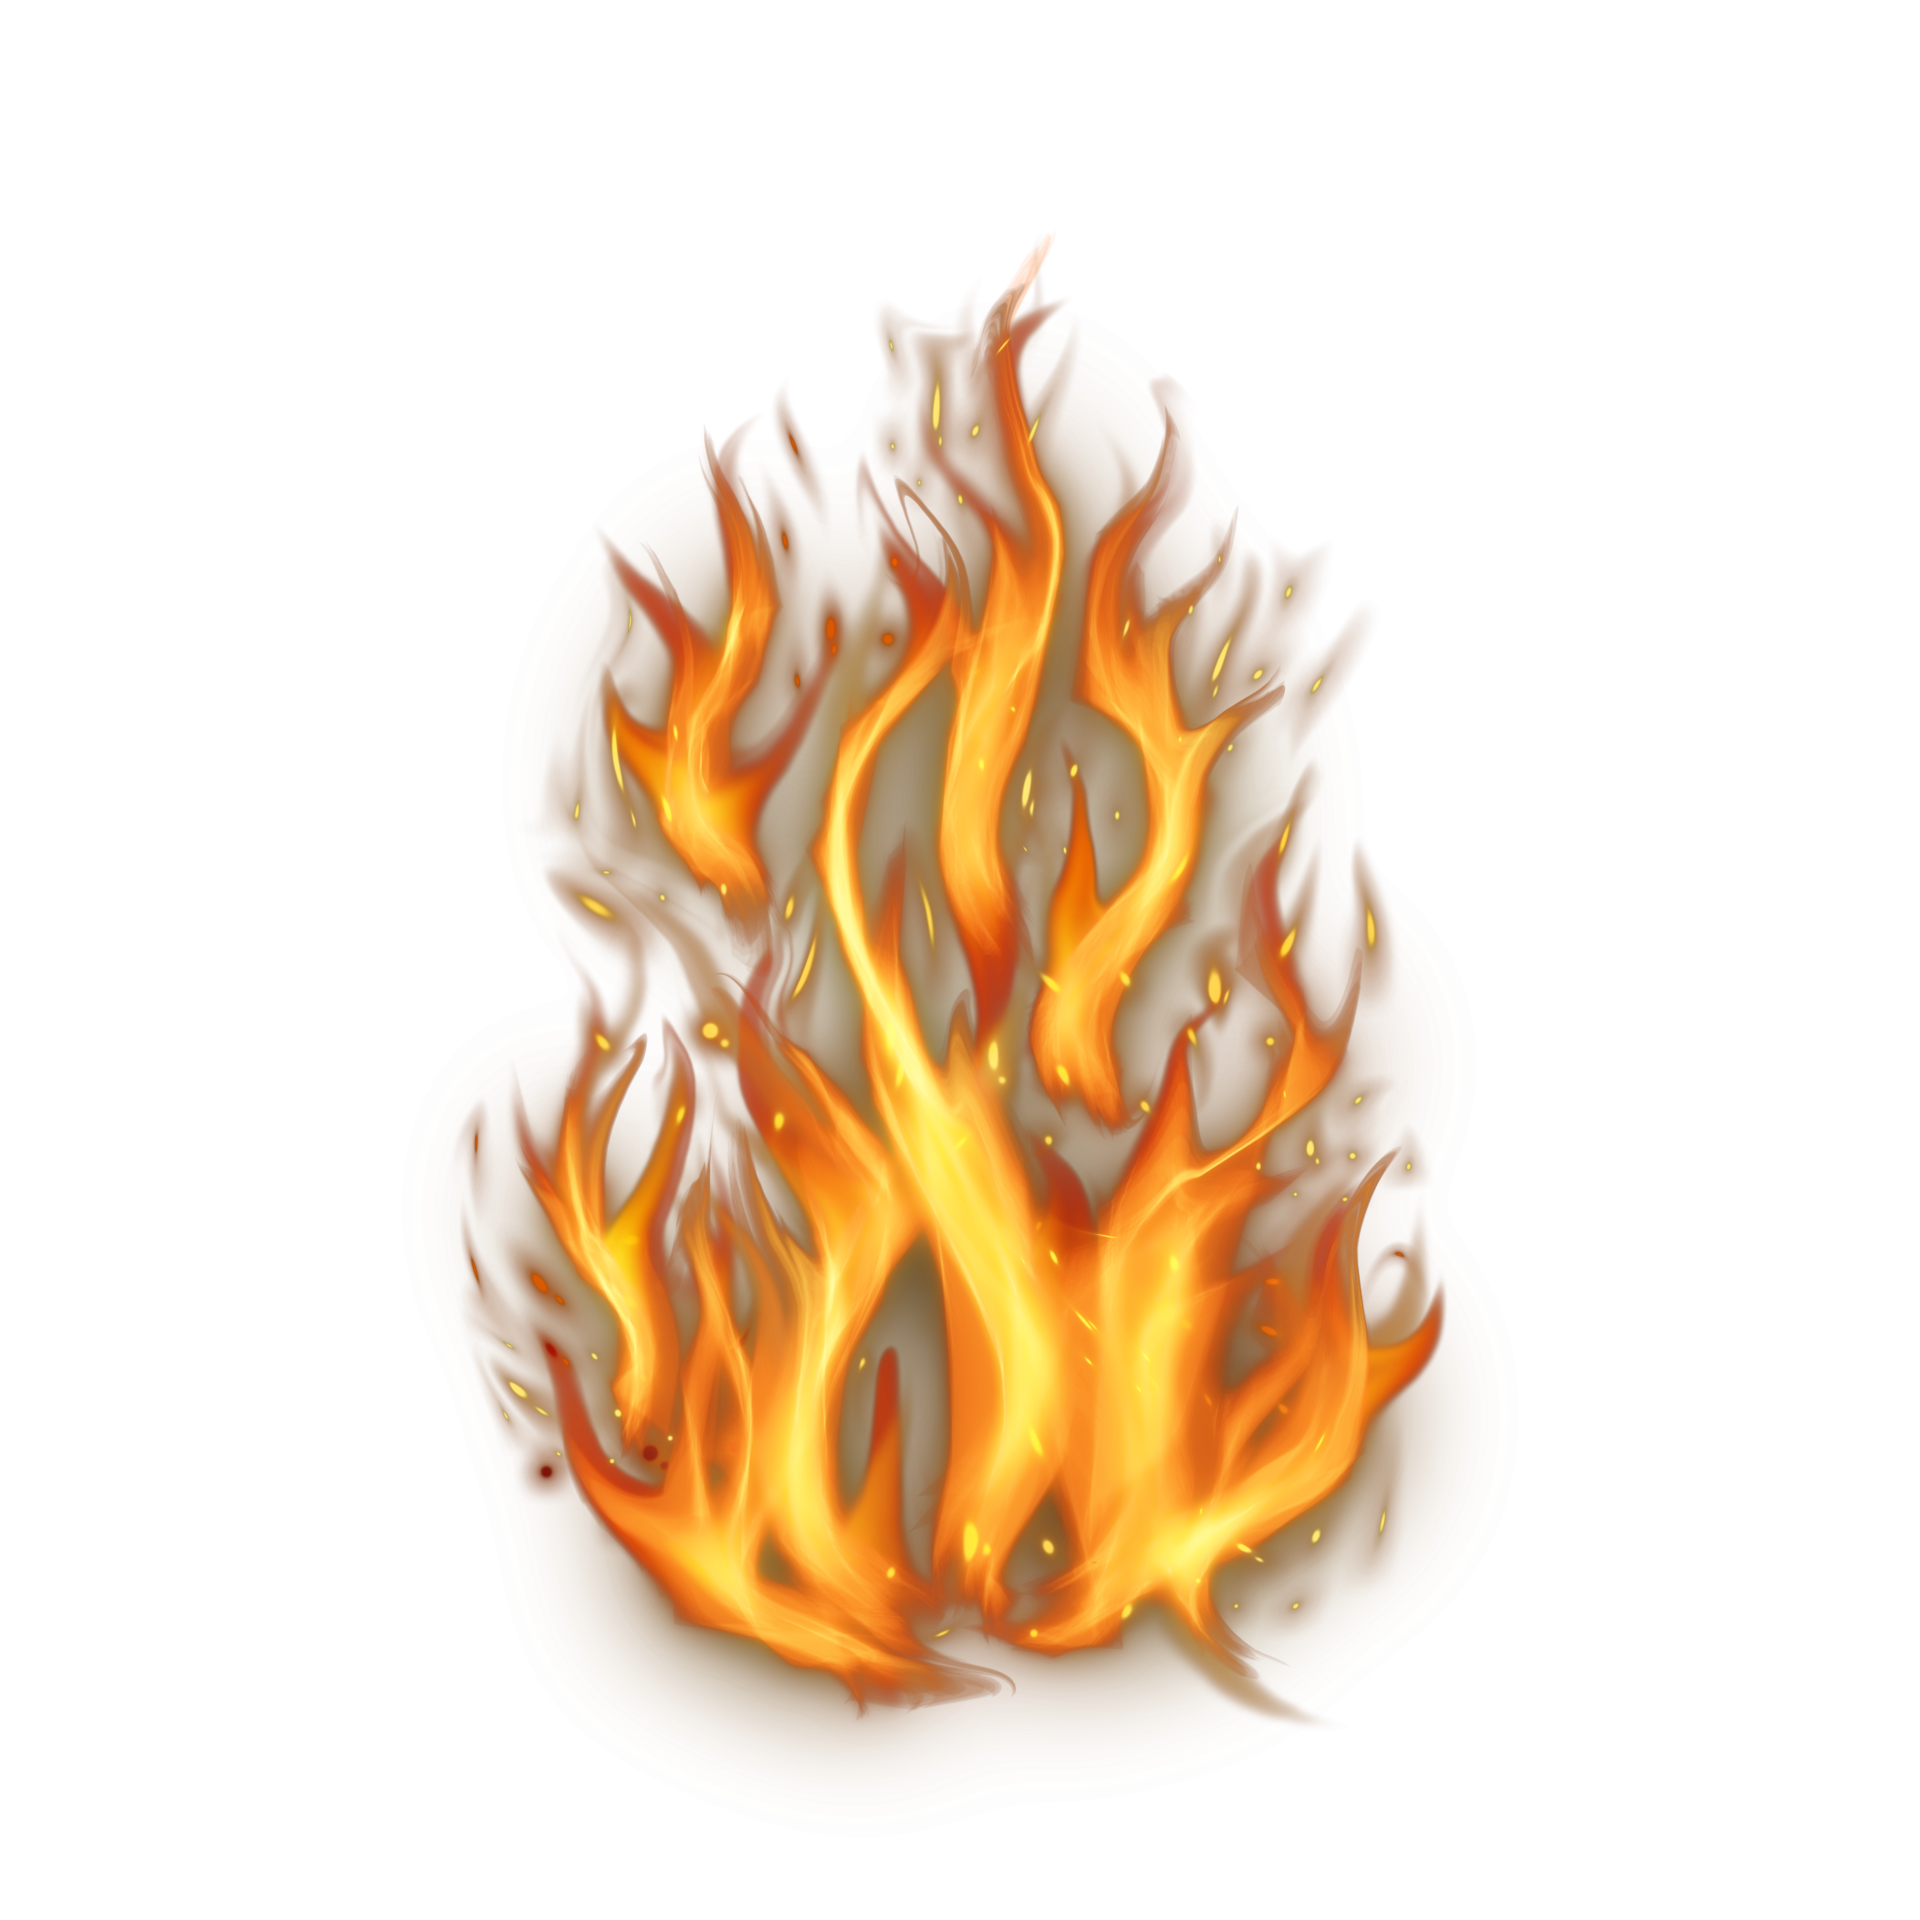 Fogo número 7, sete chamas ardentes fonte de queimadura ardente brilhante  na ilustração 3d de fundo preto